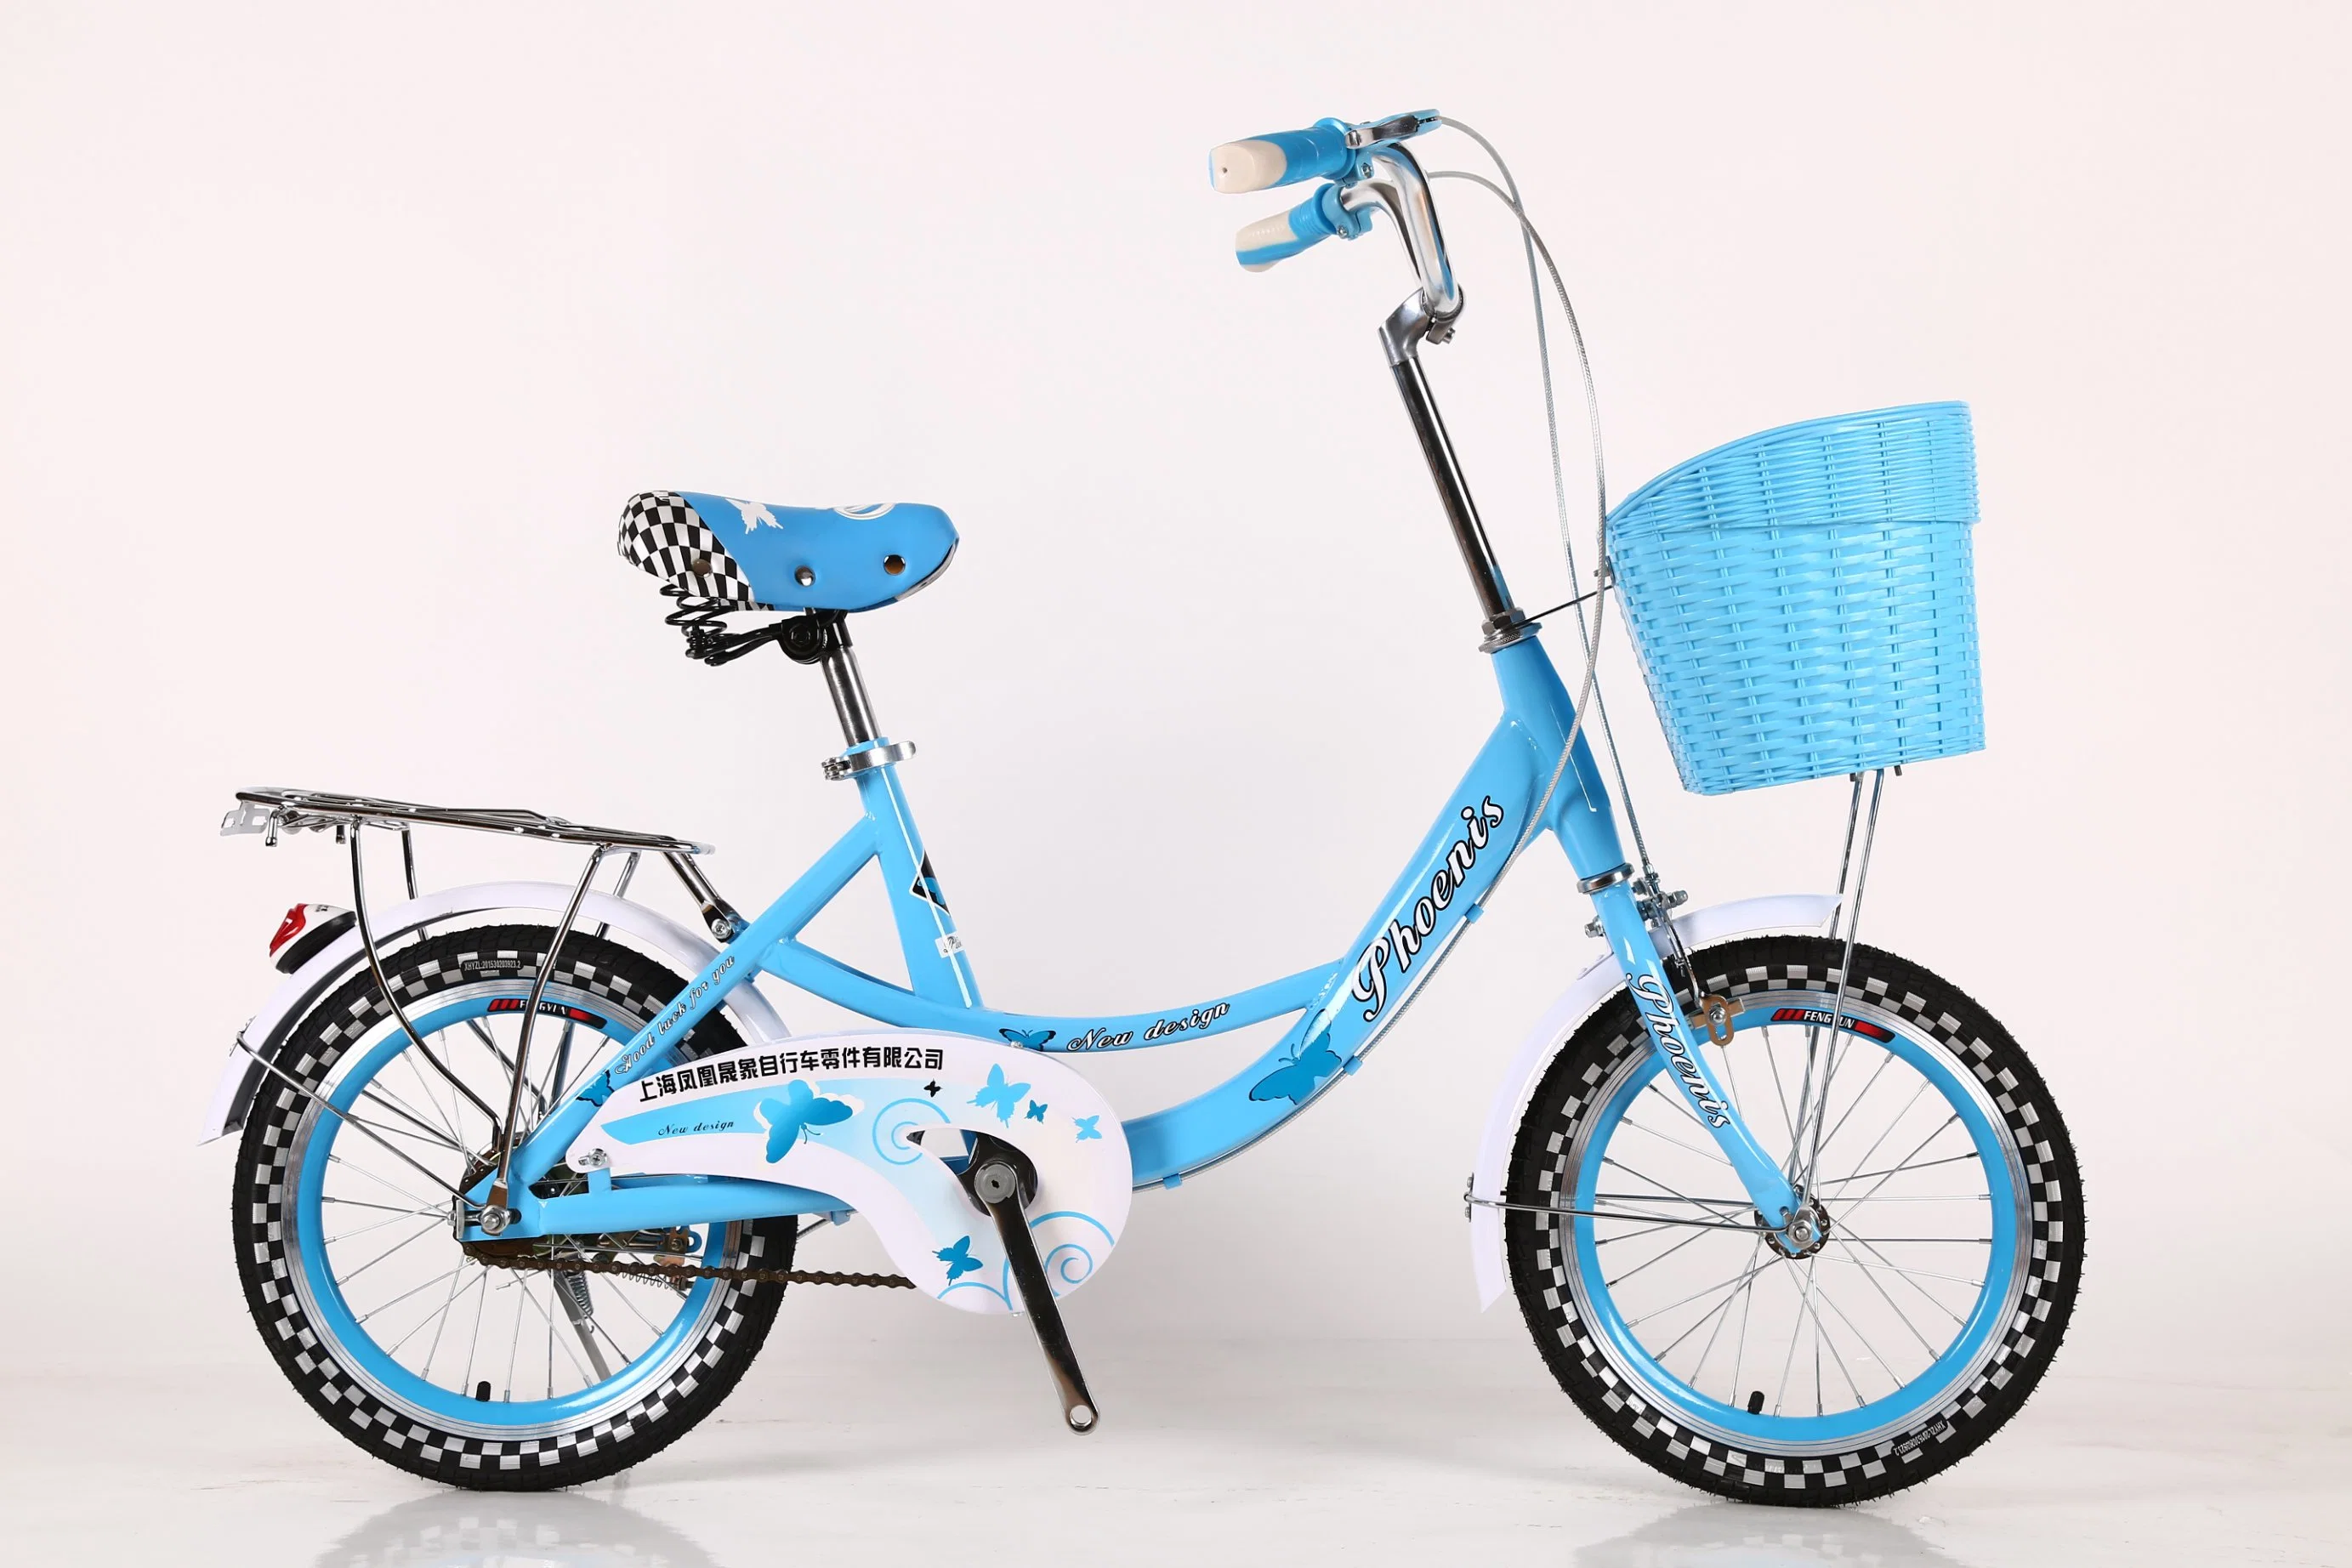 شركة محترفة لتصنيع الألعاب للأطفال لعام 2018 الدراجة الجديدة الطُرز